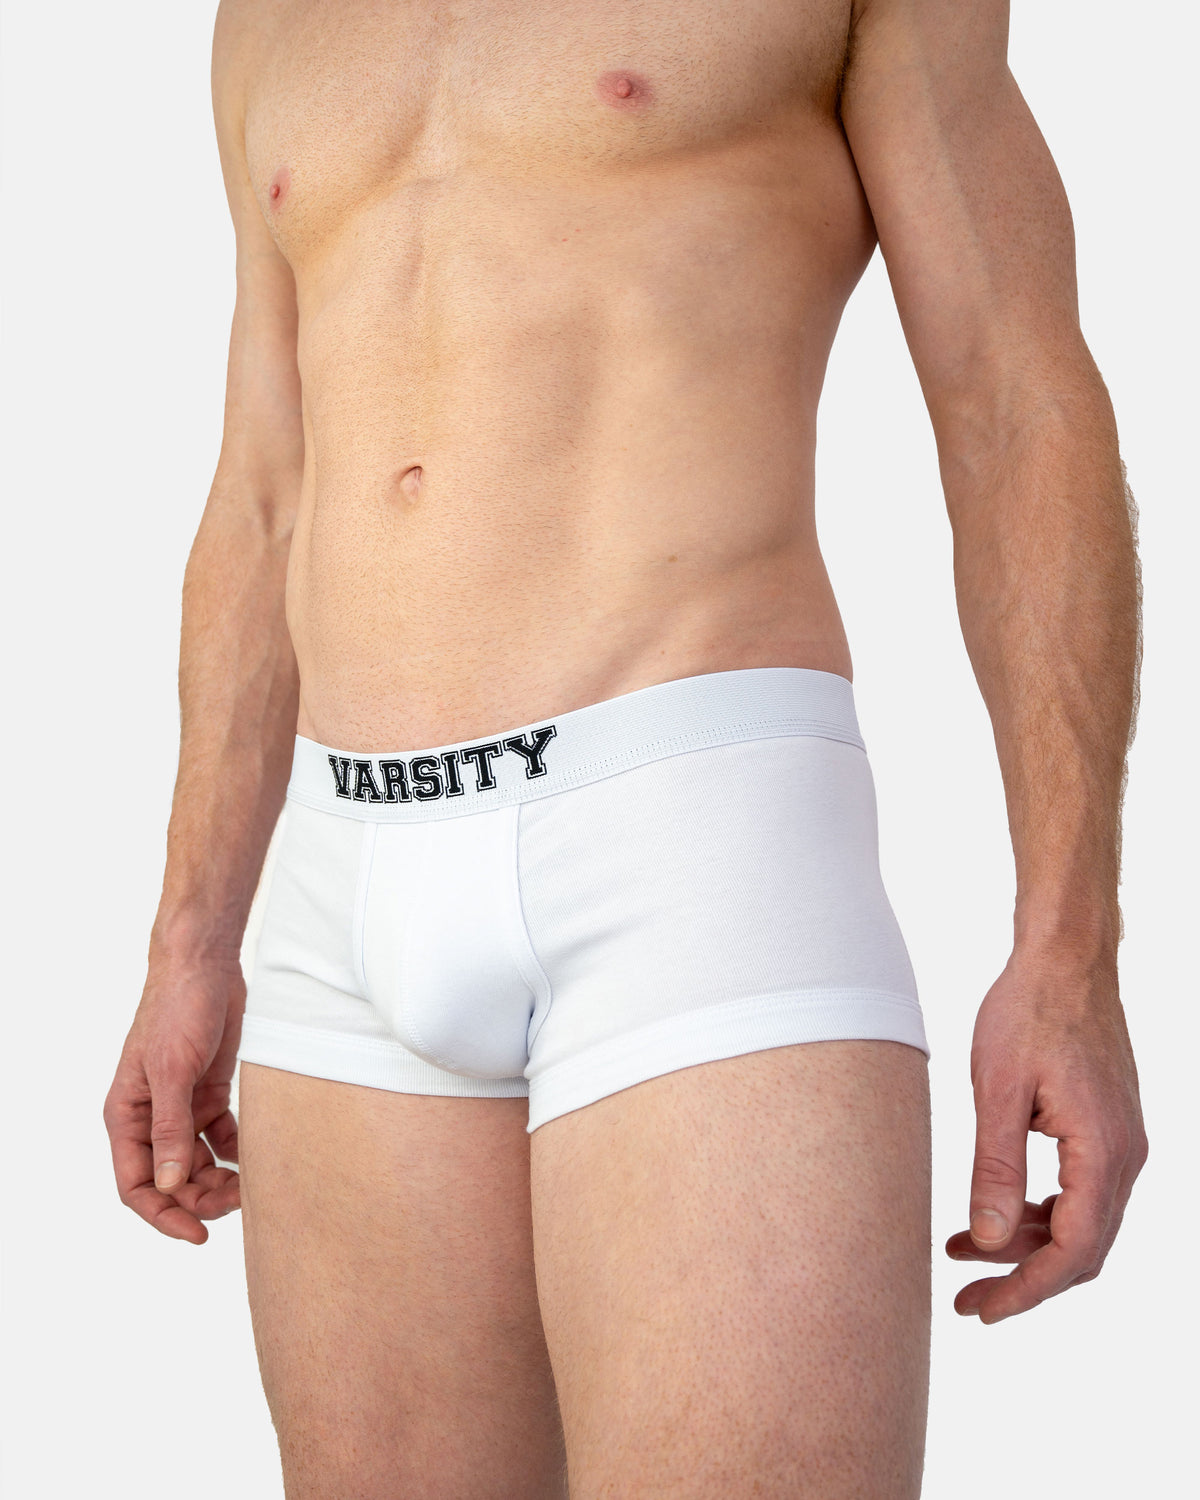 Men's Underwear Jokstraps, Online Australia